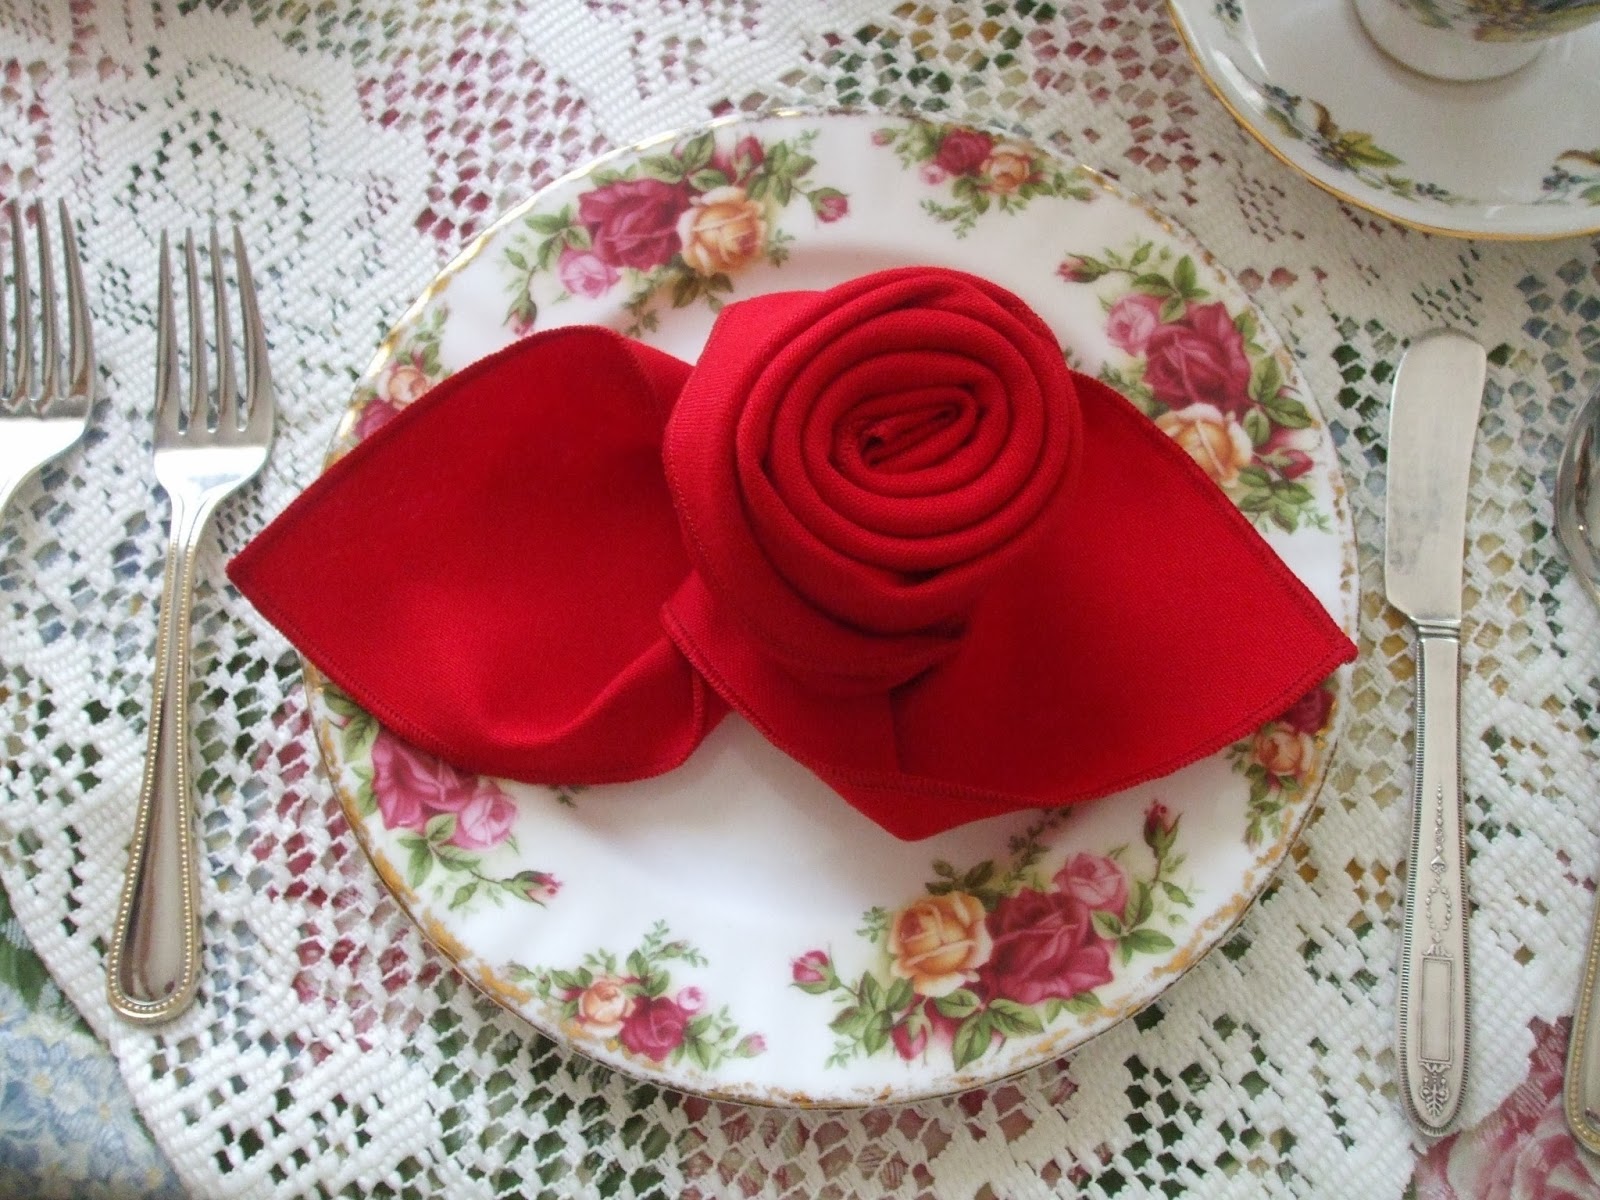 Rosemary's Sampler Napkin Folding a Rose